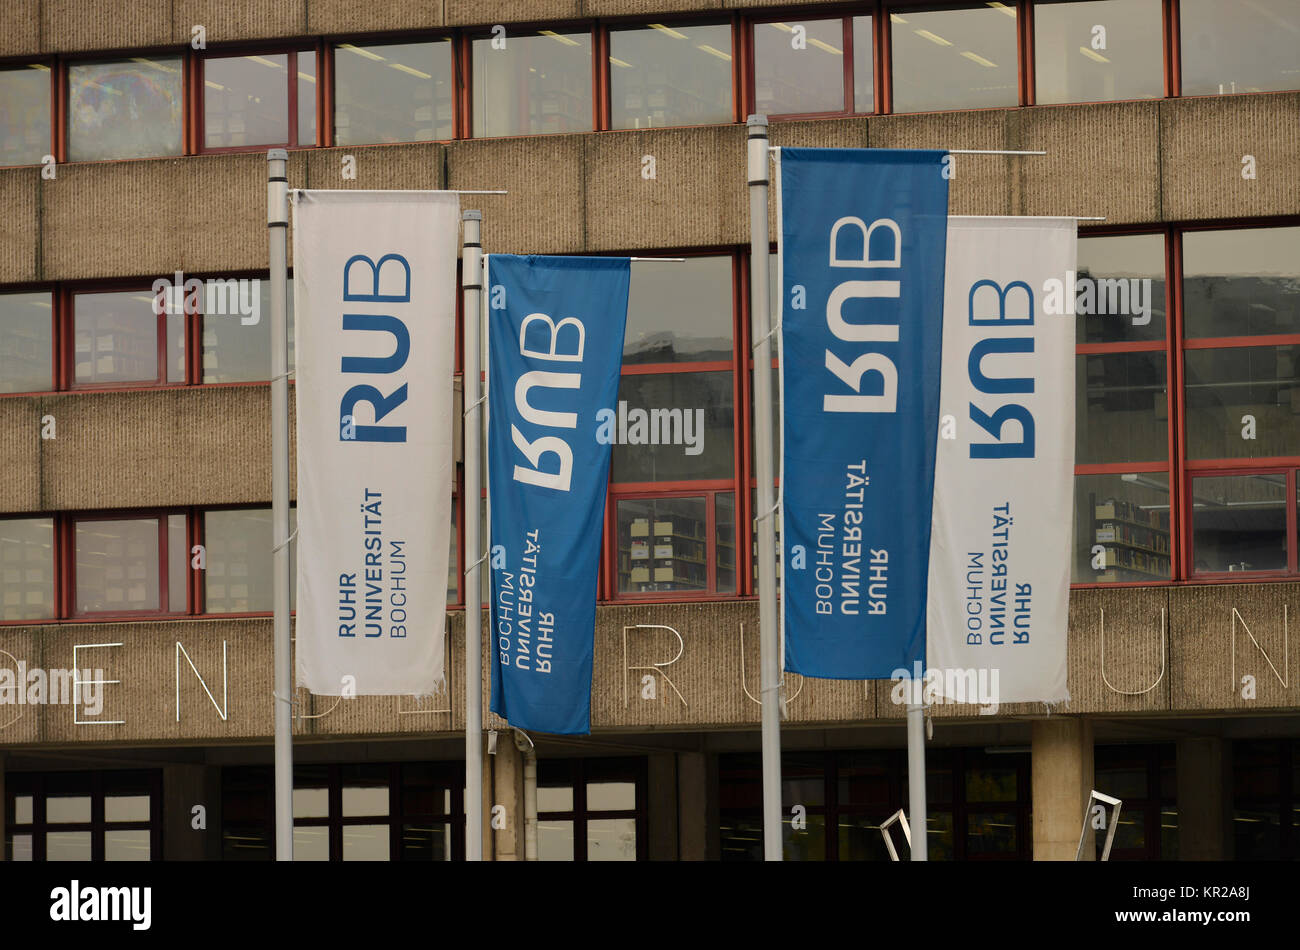 Flags, forum, Ruhr university, Bochum, North Rhine-Westphalia, Germany, Fahnen, Forum, Ruhr-Universitaet, Nordrhein-Westfalen, Deutschland Stock Photo